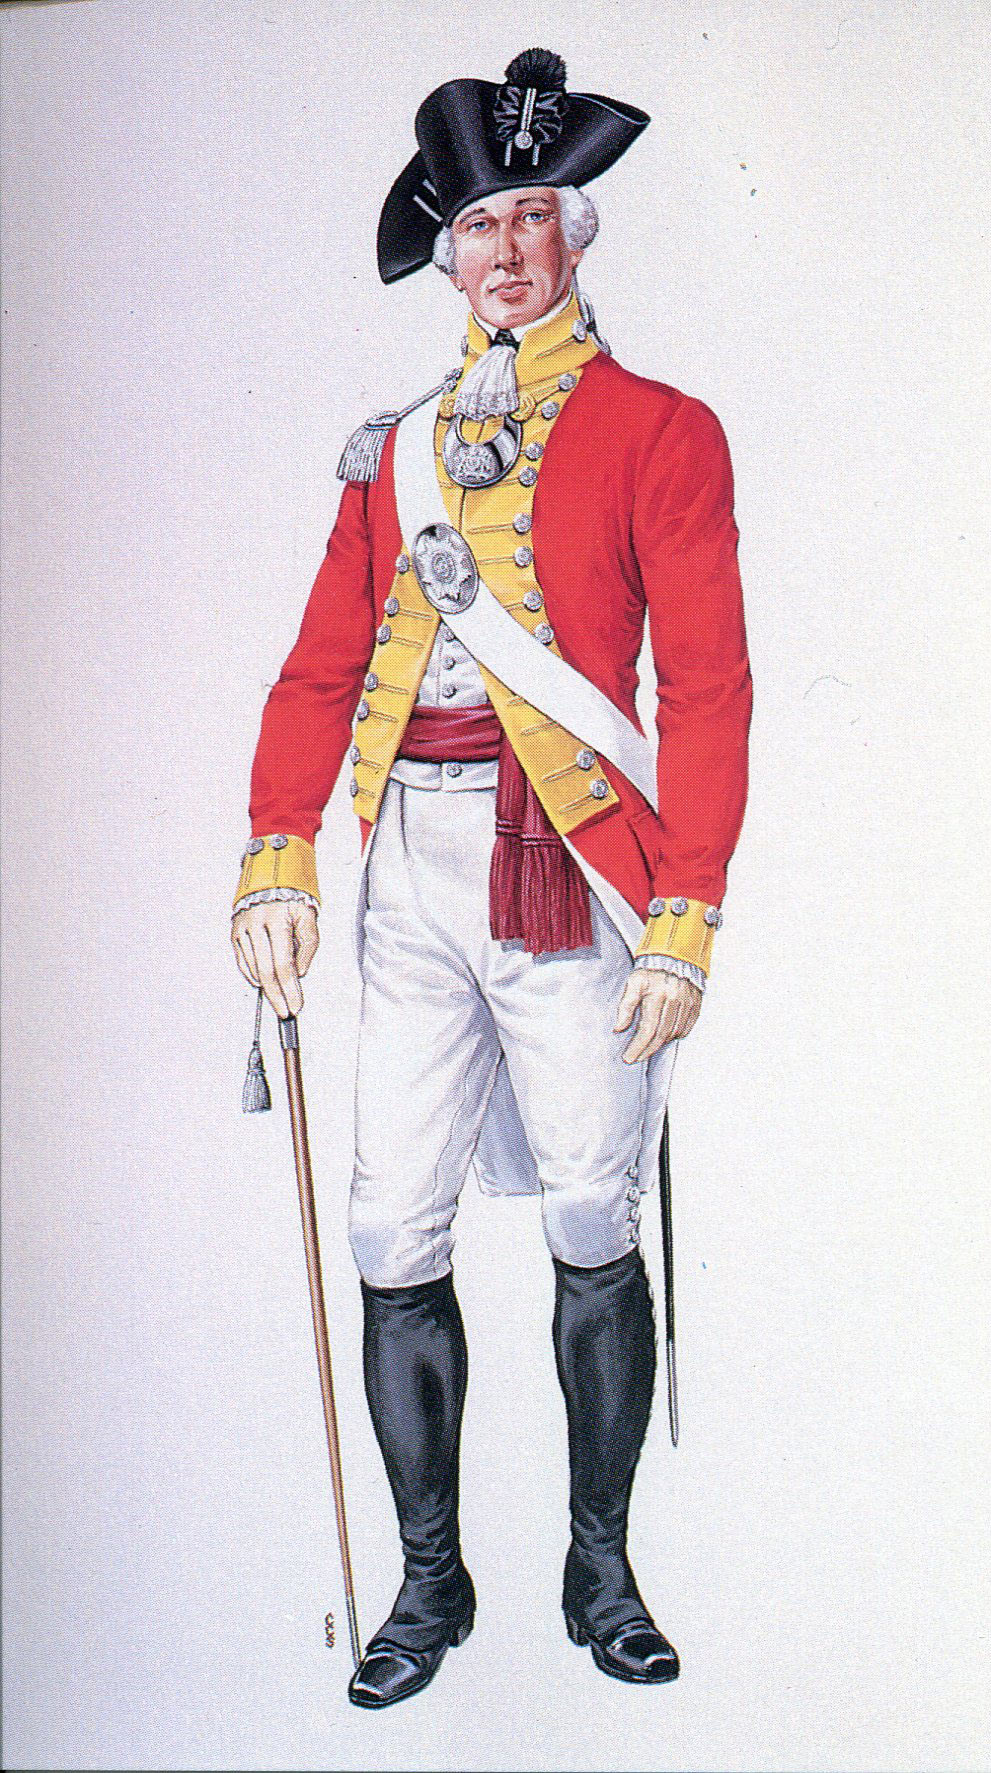 British Soldier Revolutionary War Uniform